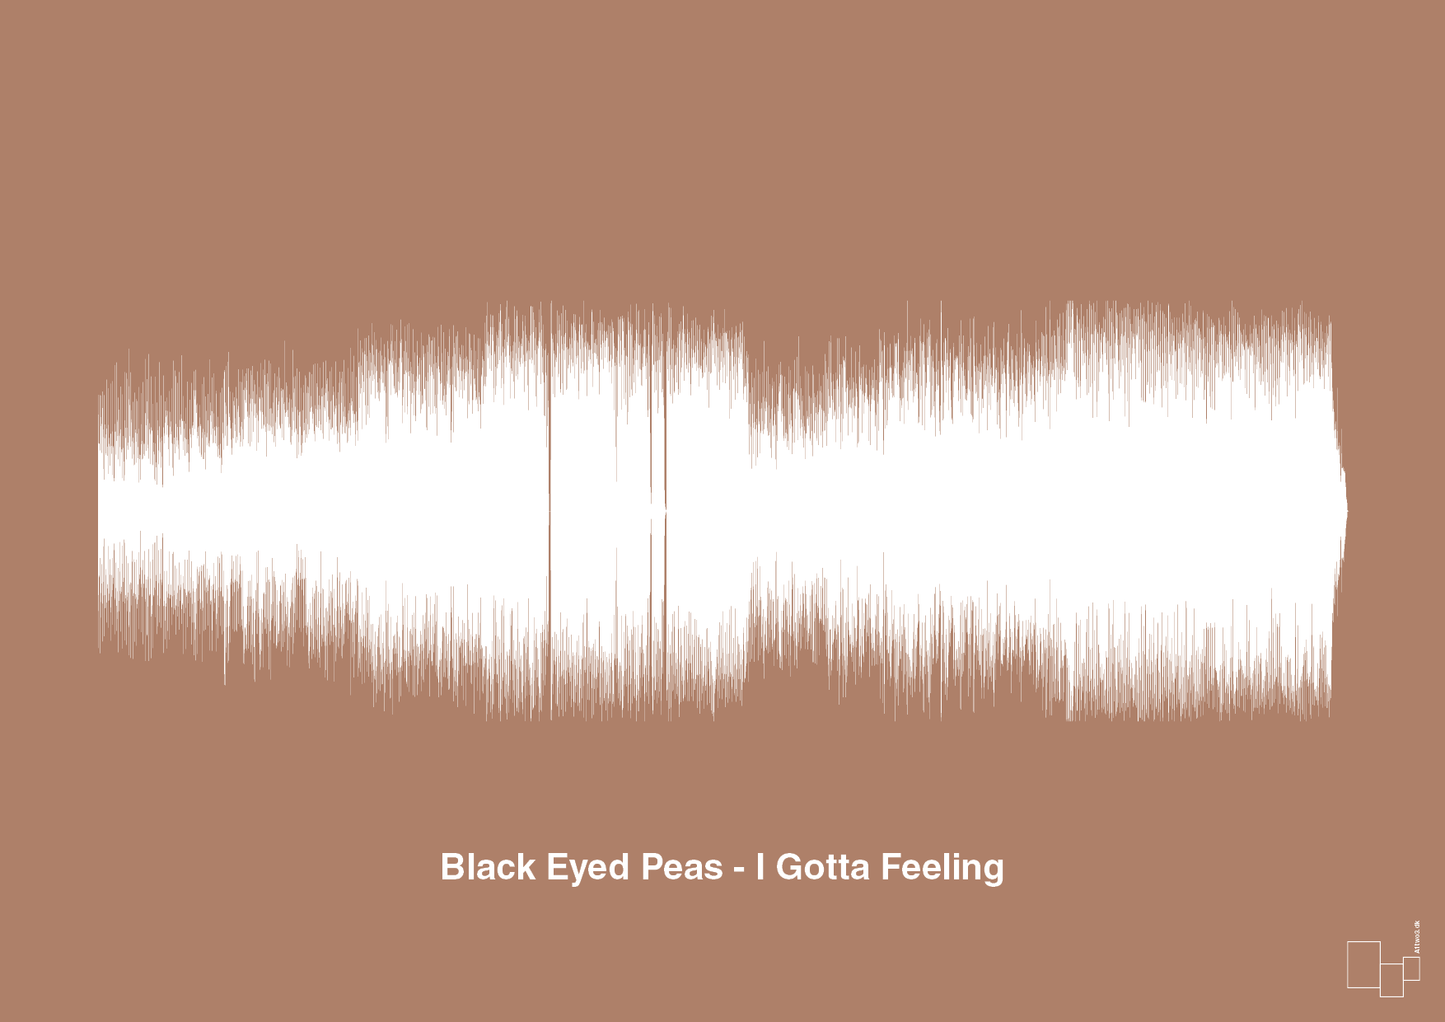 black eyed peas - i gotta feeling - Plakat med Musik i Cider Spice